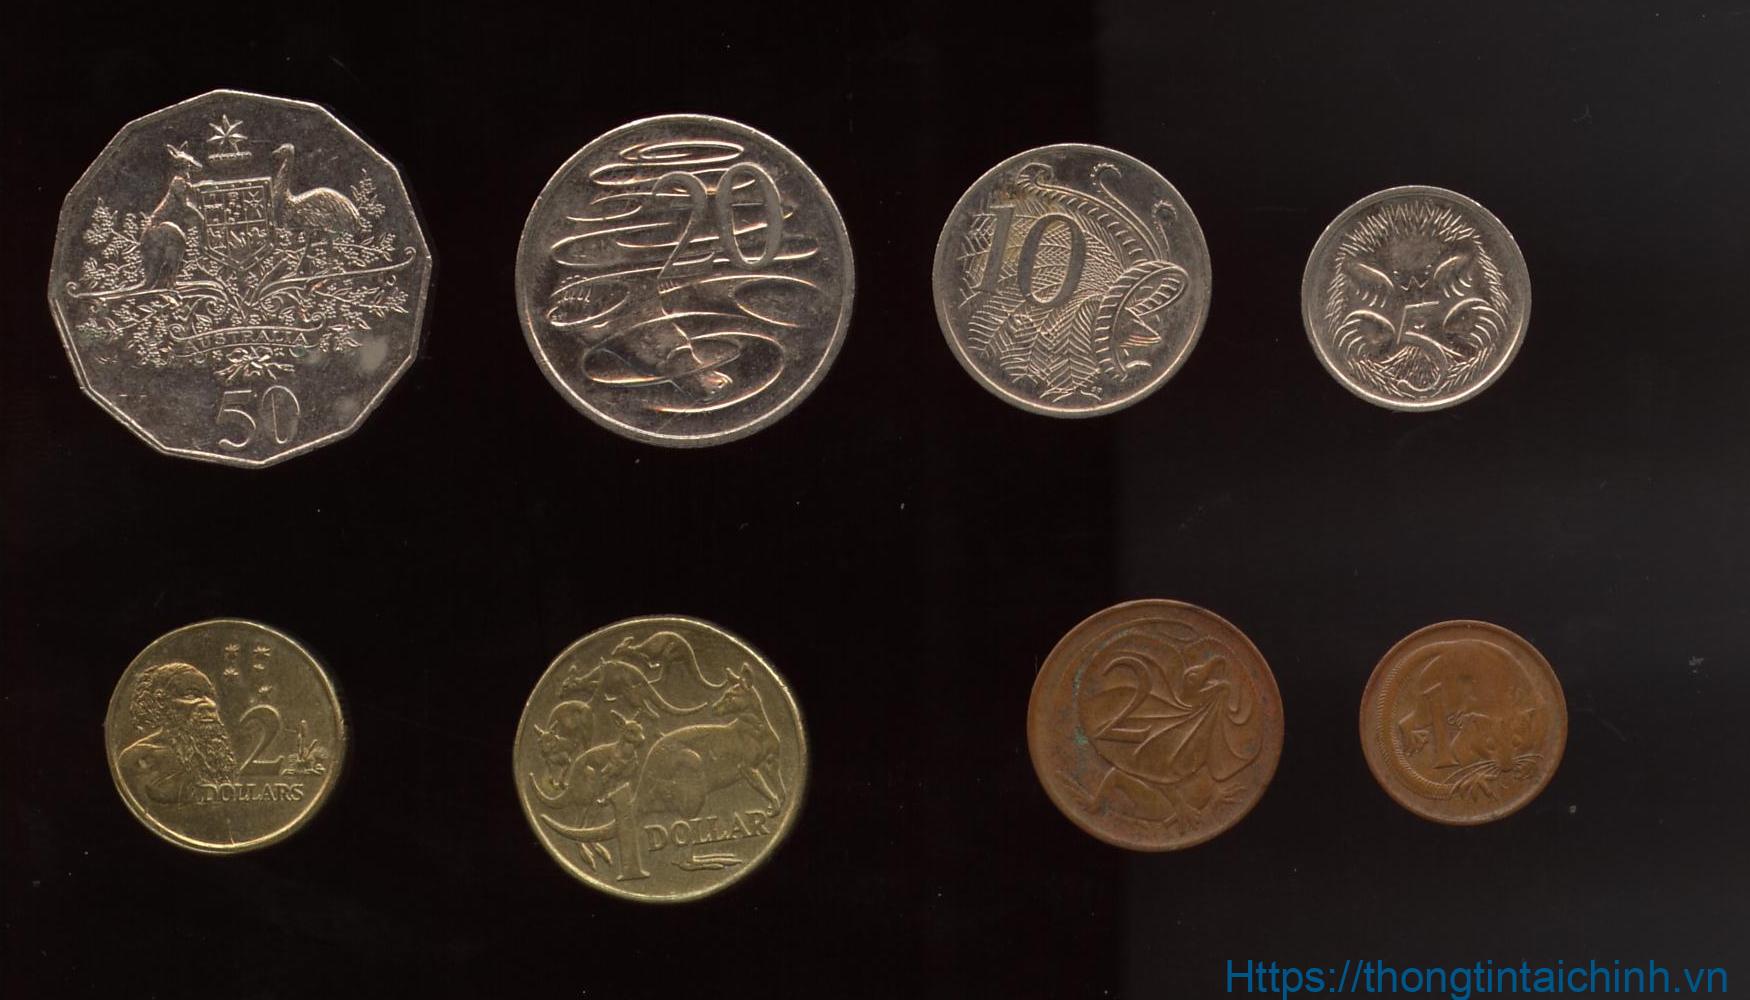 Tiền xu Úc gồm mệnh giá 5c, 10c, 20c, 50c, 1$, 2$ với mặt trước in chân dung nghiêng nữ hoàng Elizabeth II, mặt sau in hình khác nhau